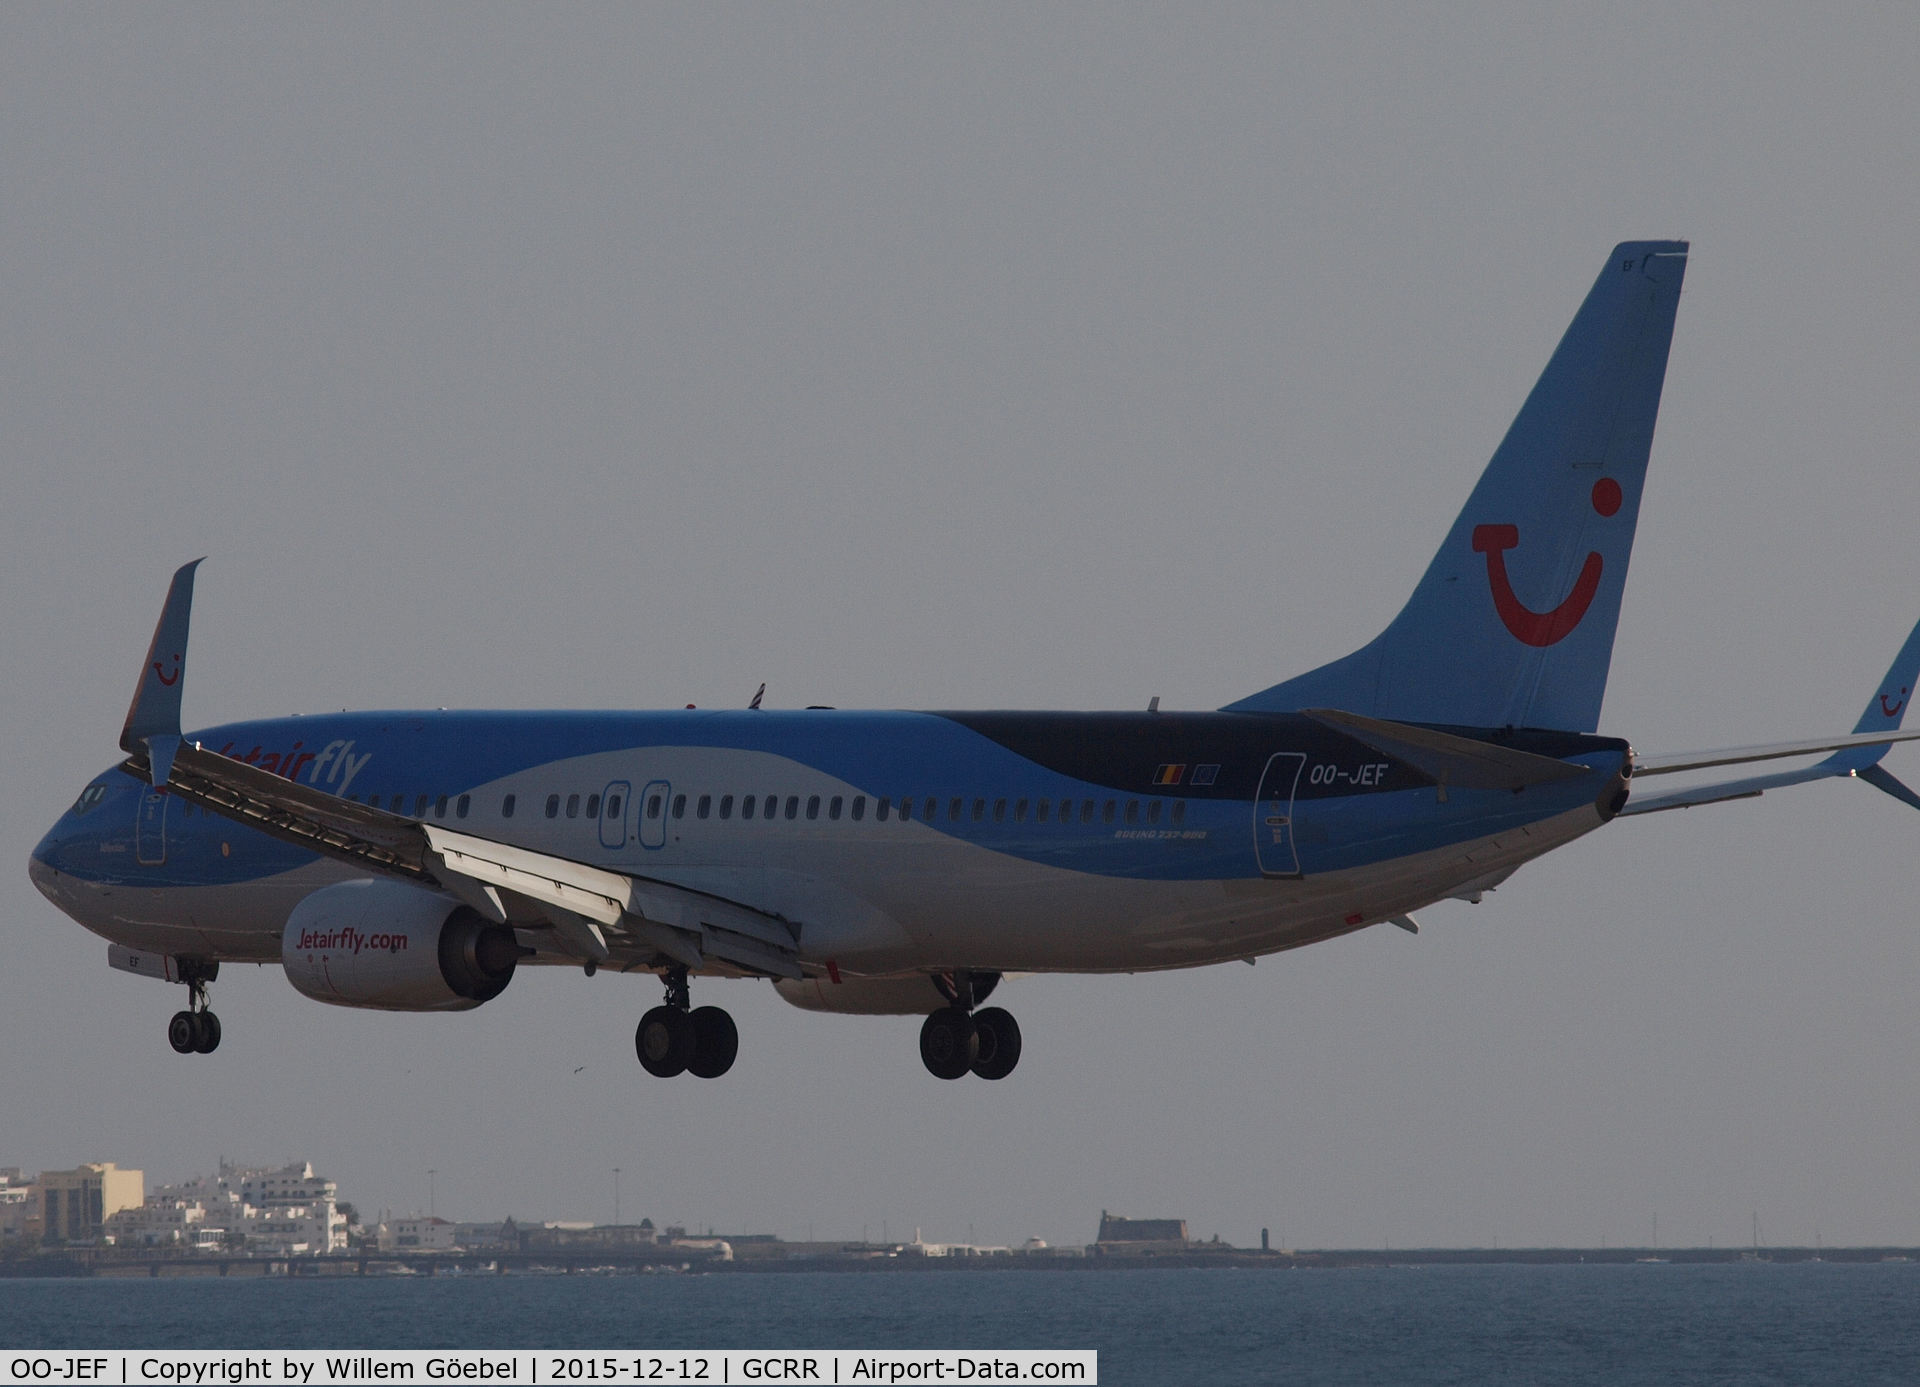 OO-JEF, 2014 Boeing 737-8K5 C/N 44271, Landing on Lanzarote airport